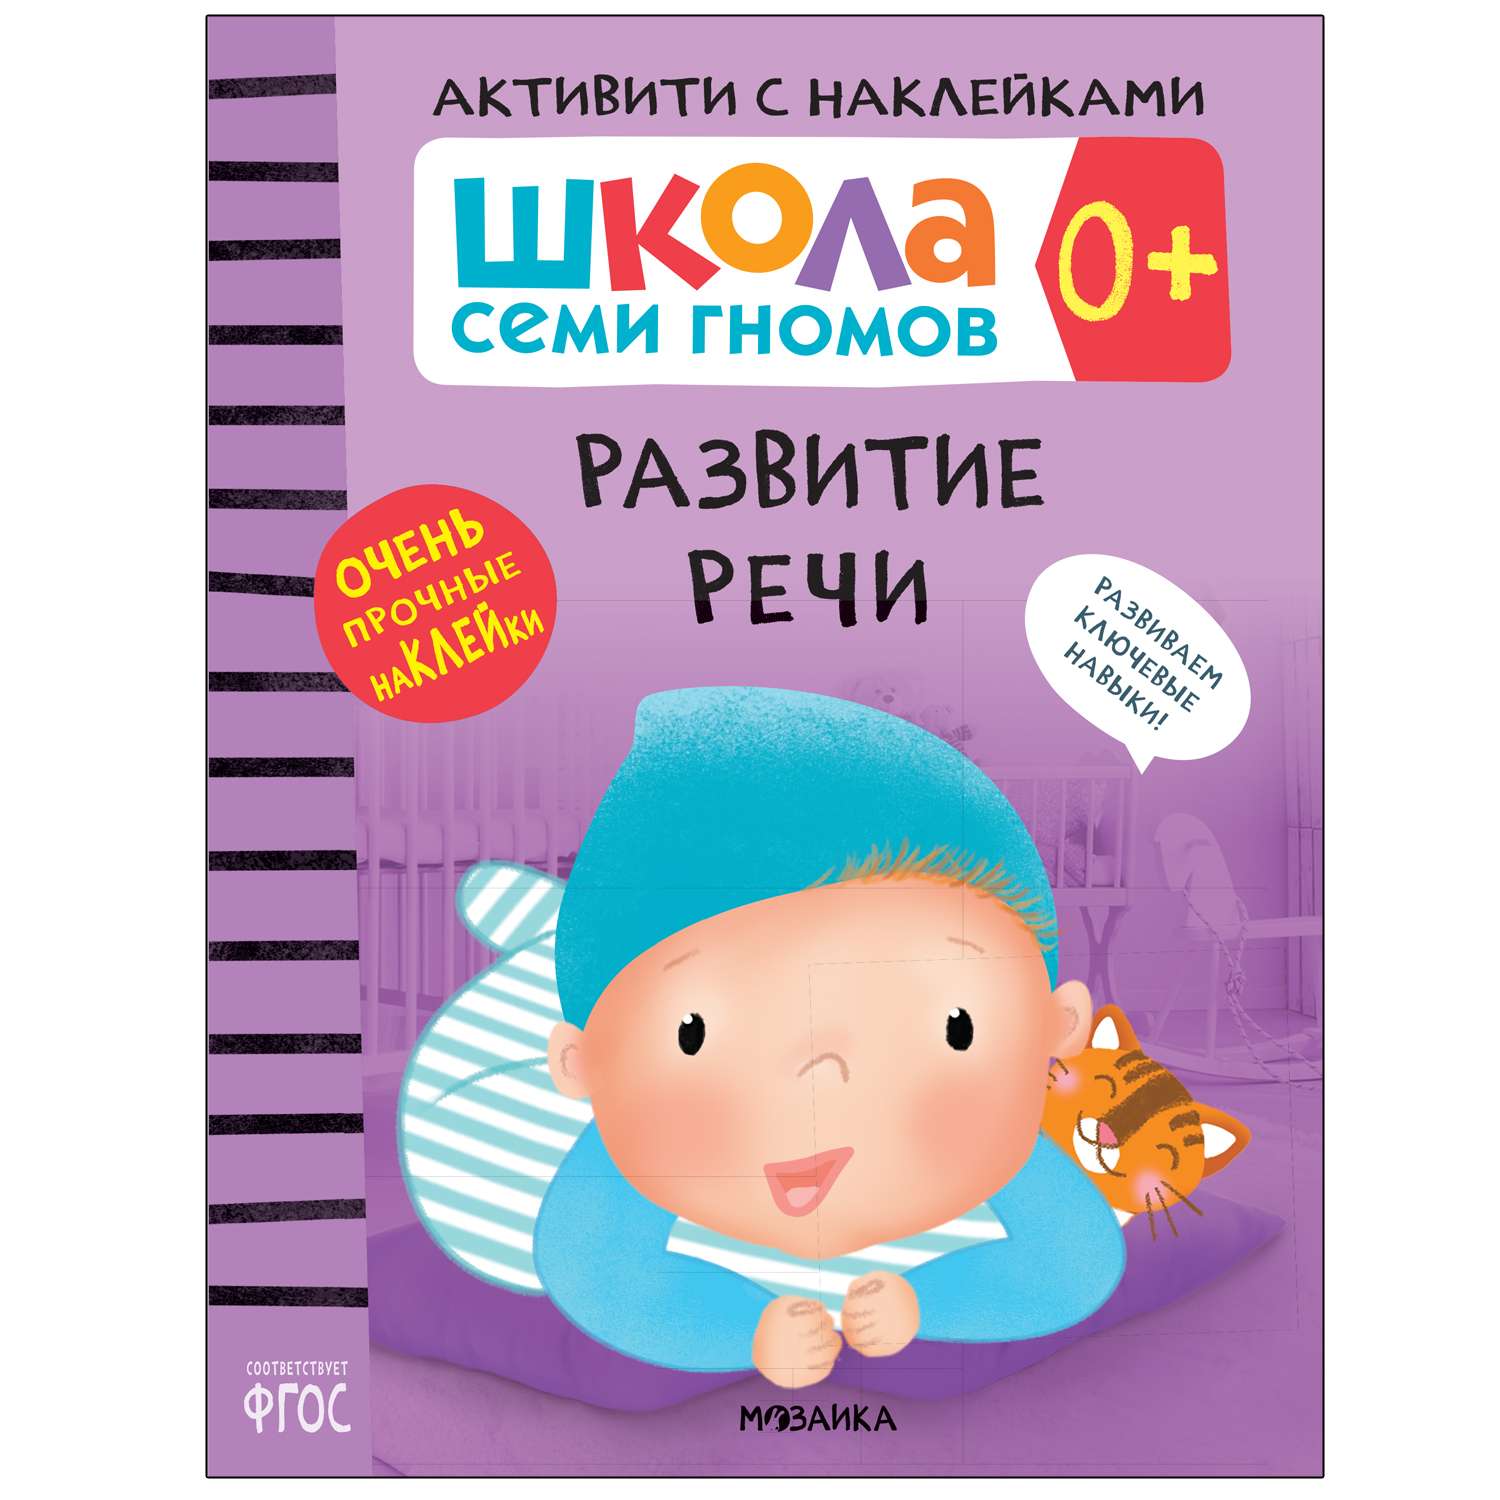 Книга МОЗАИКА kids Школа Cеми Гномов Активити с наклейками Развитие речи 0 - фото 1